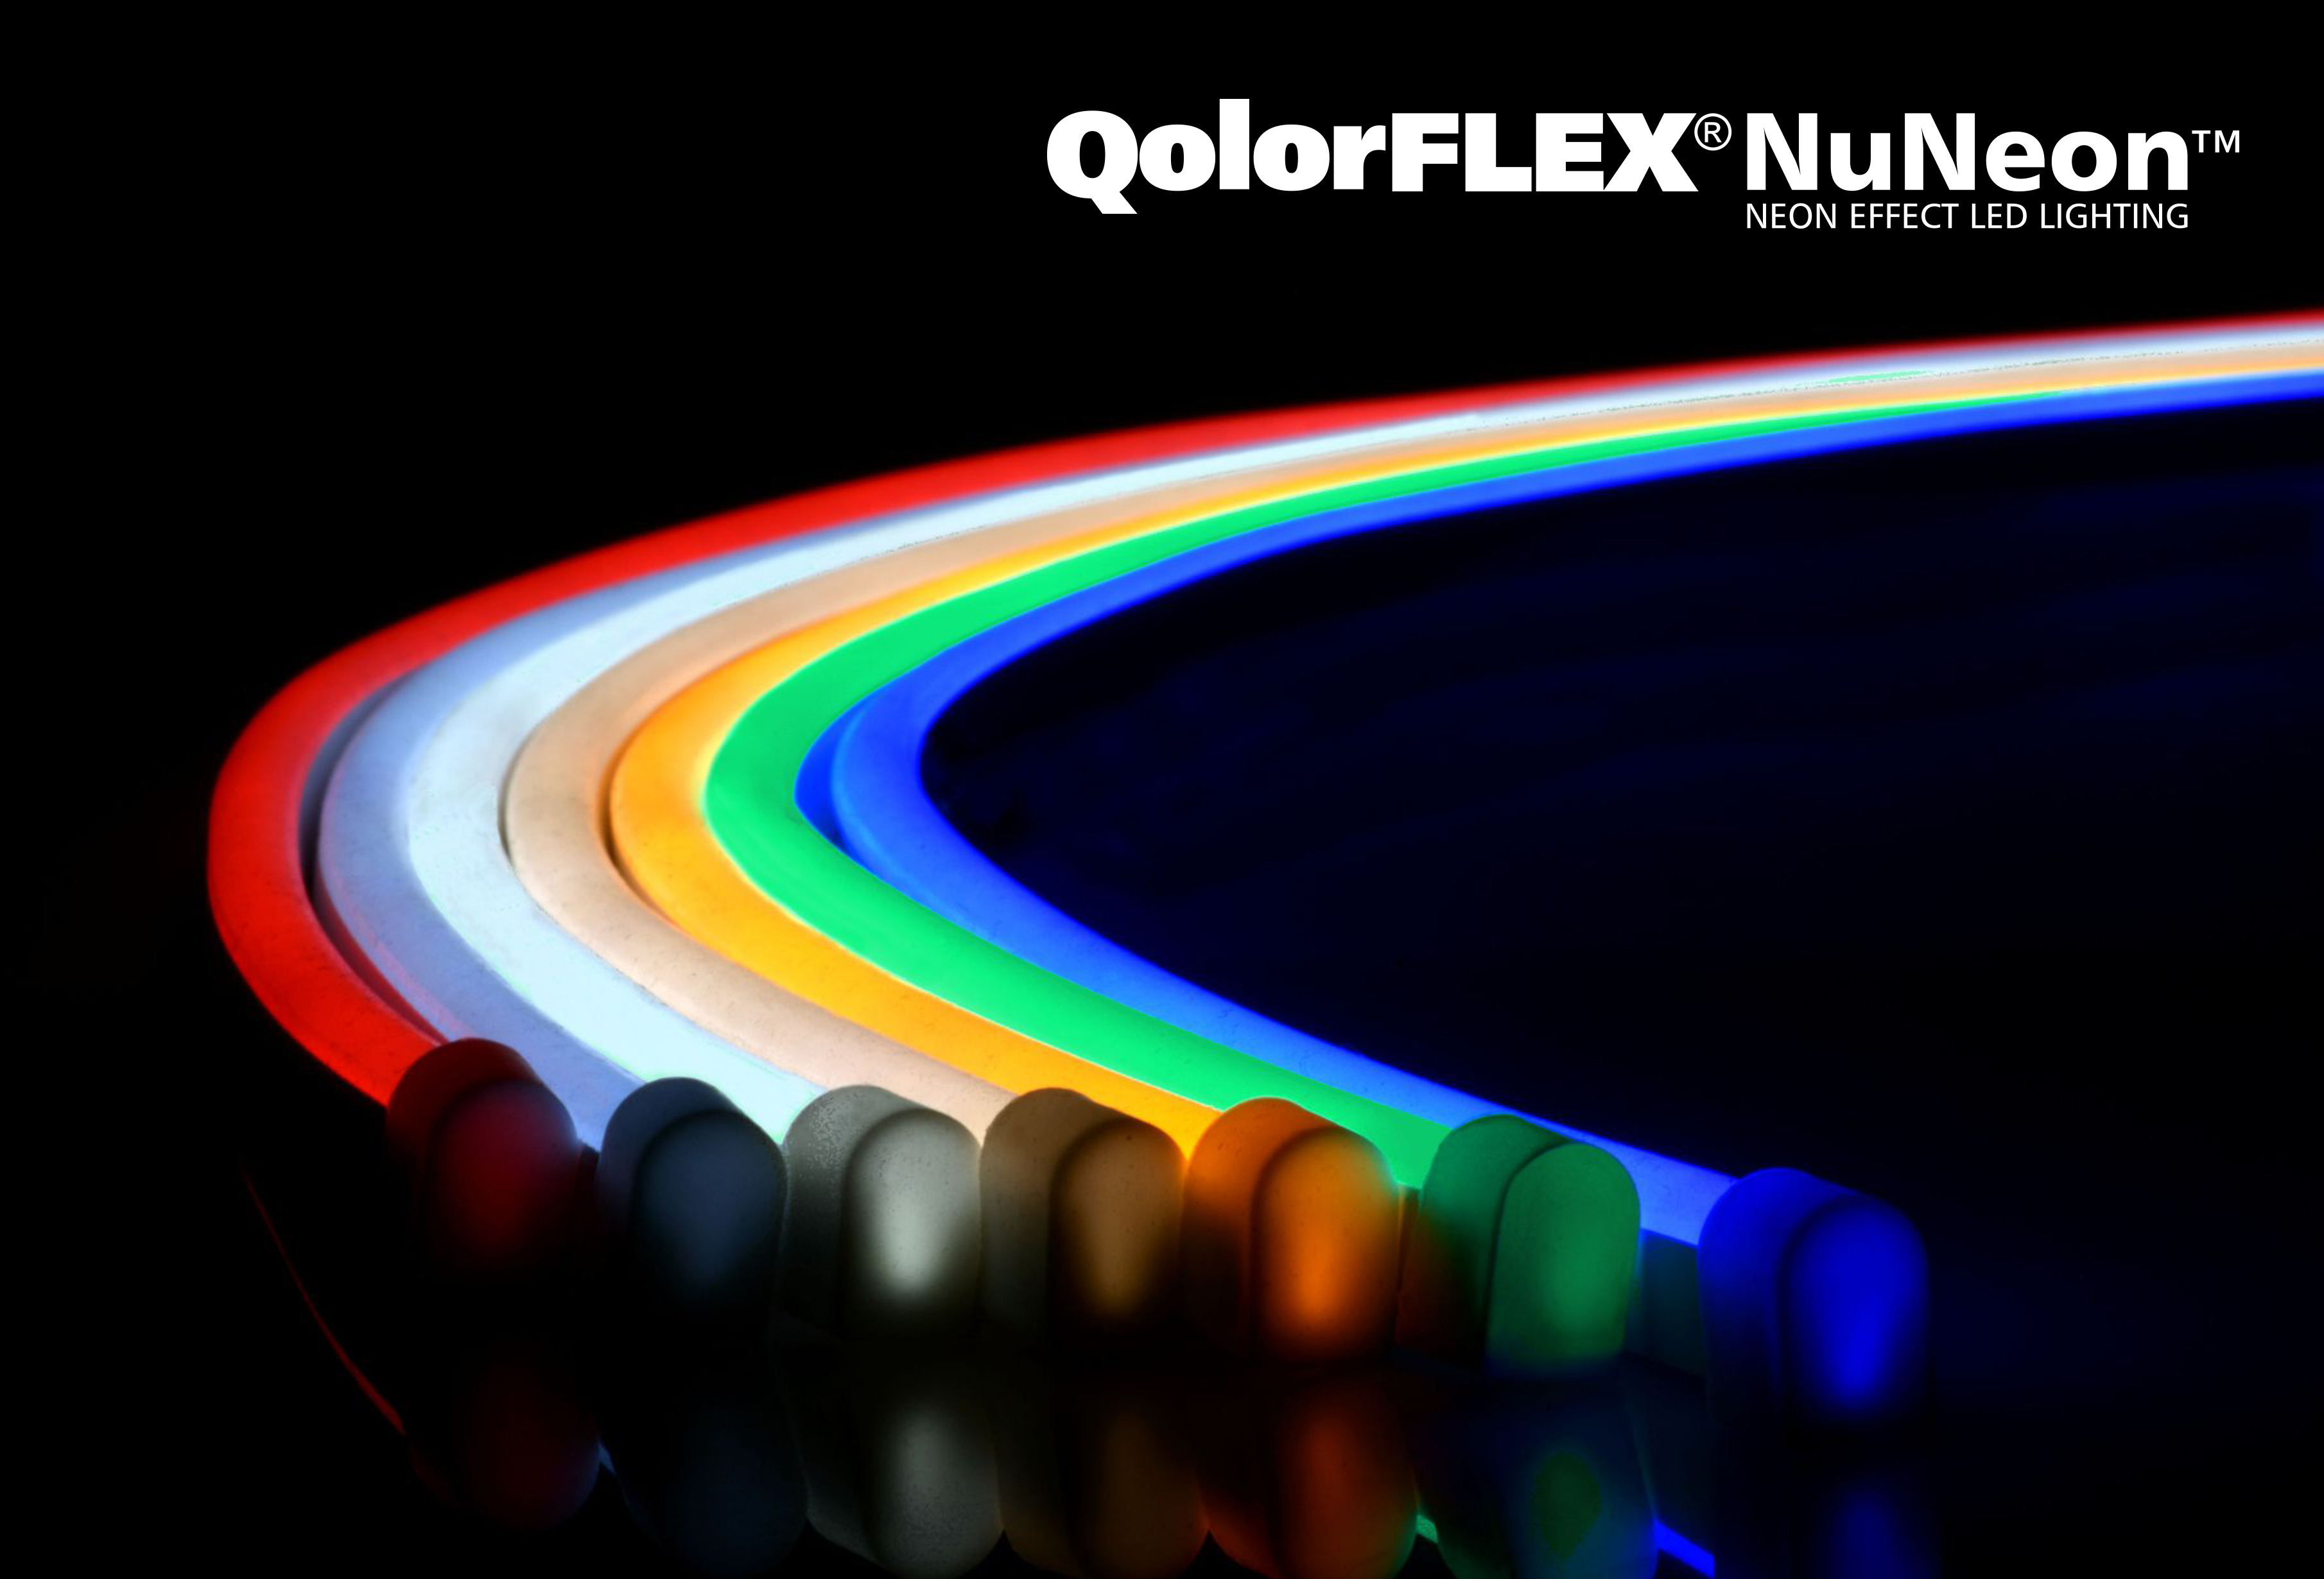 QolorFLEX NuNeon varieties - rainbow